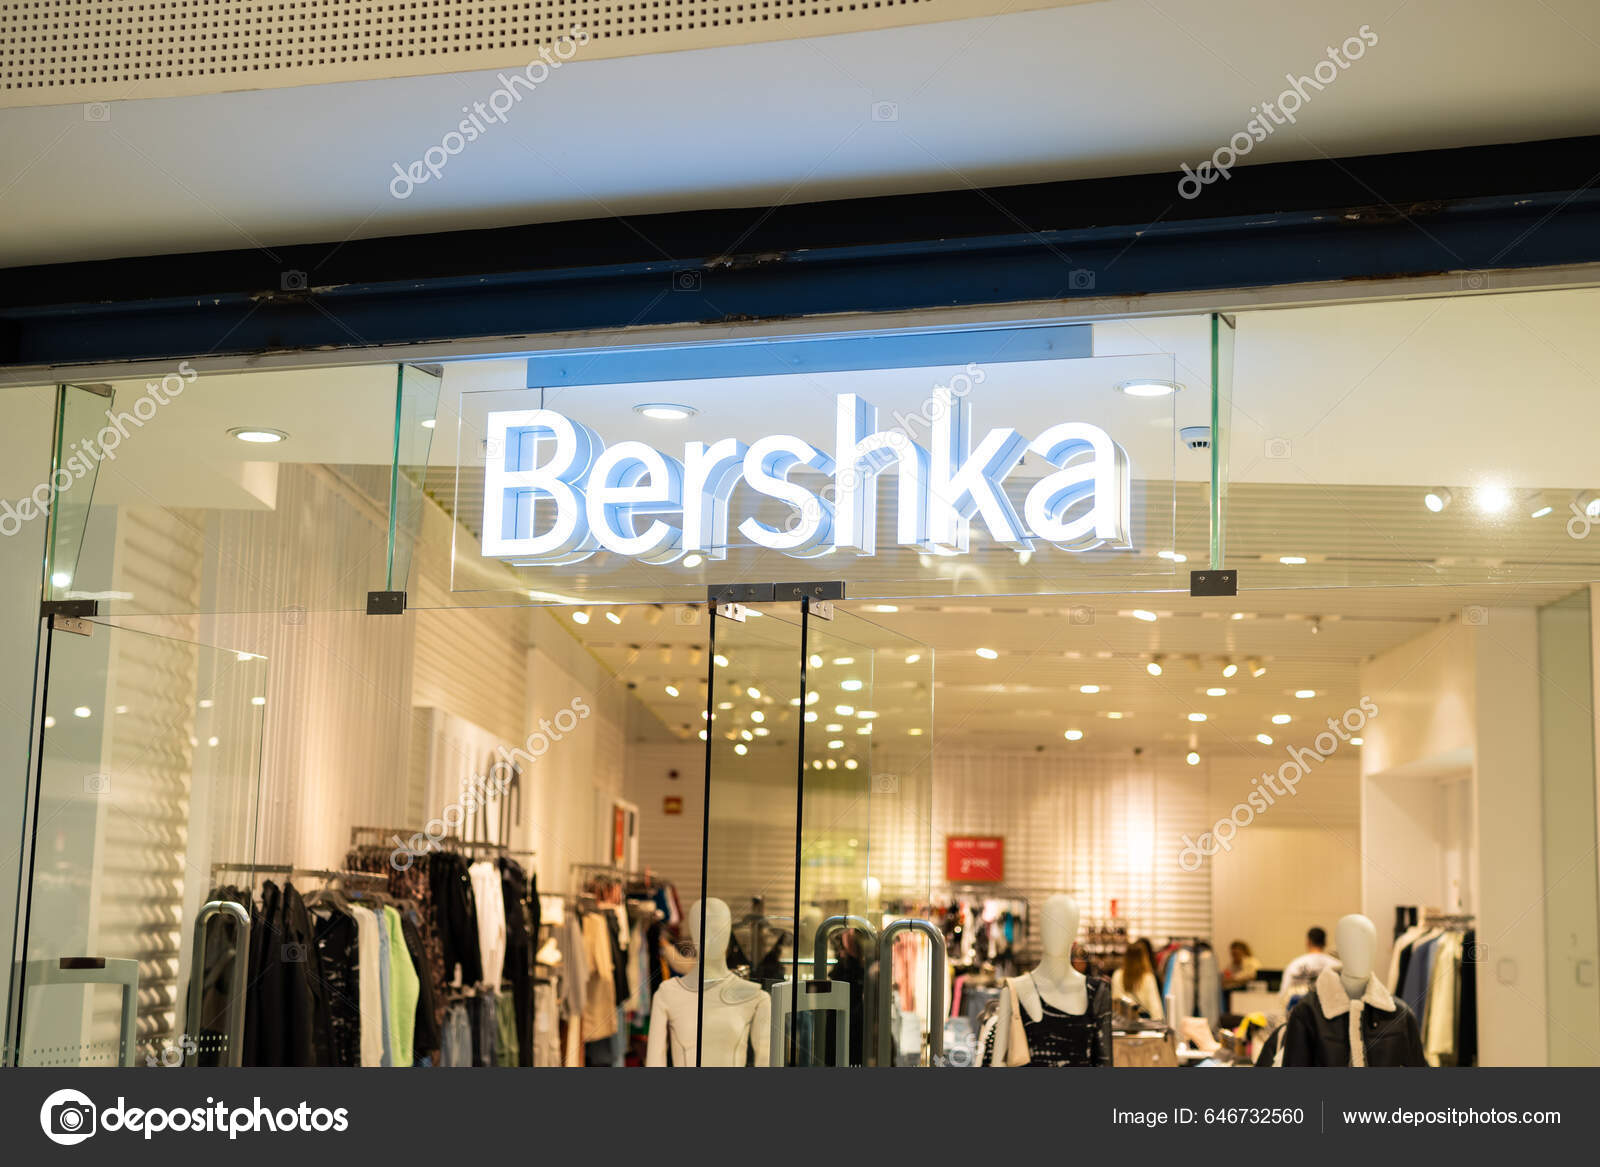 Bershka logo Stock Photos, Royalty Free Bershka logo Images | Depositphotos